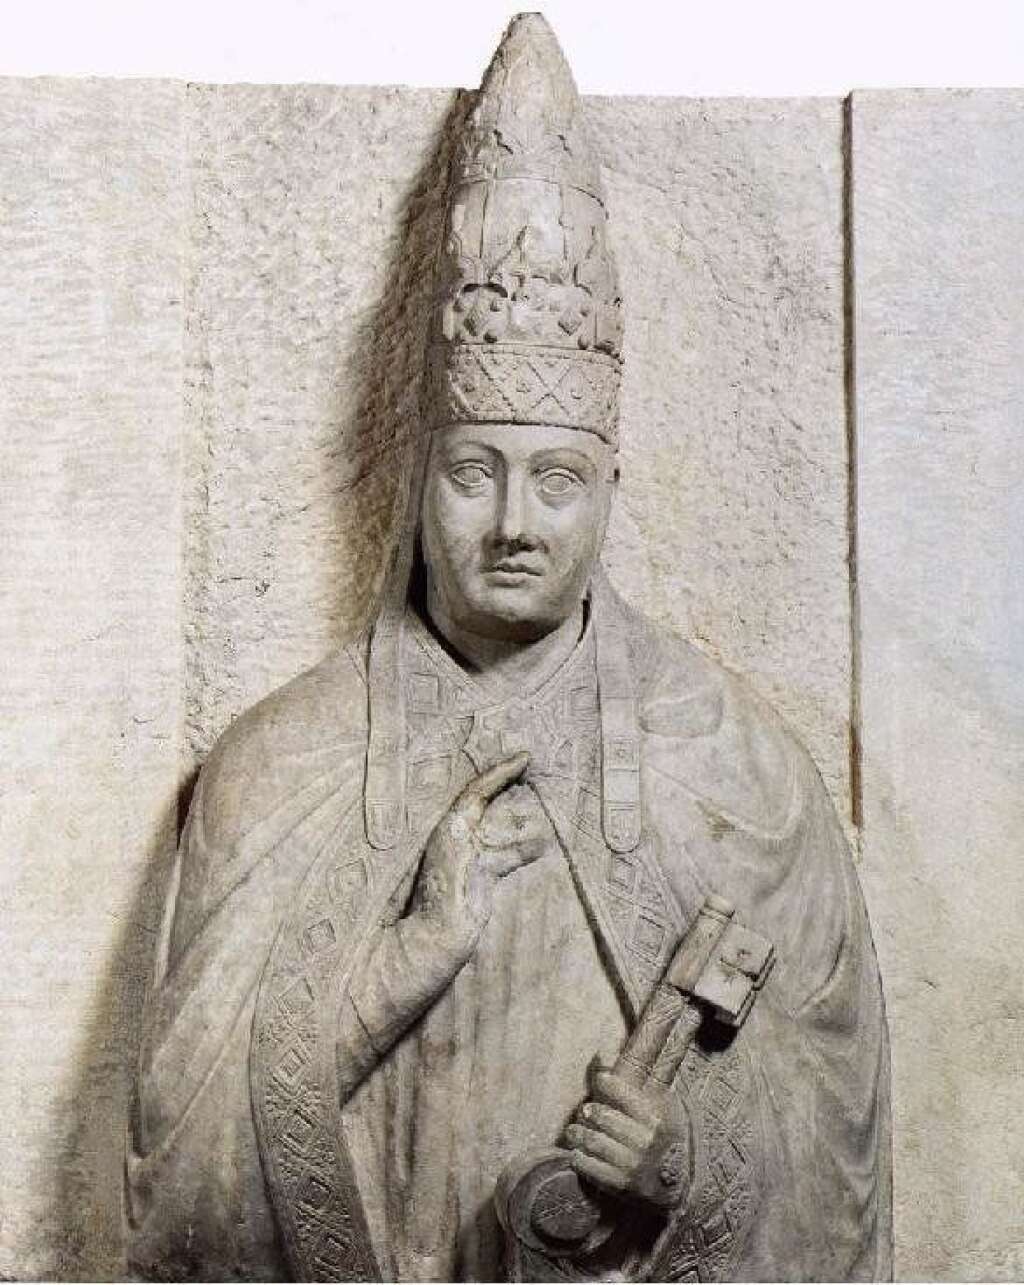 Boniface VIII - Dec. 24, 1294 – Oct. 11, 1303